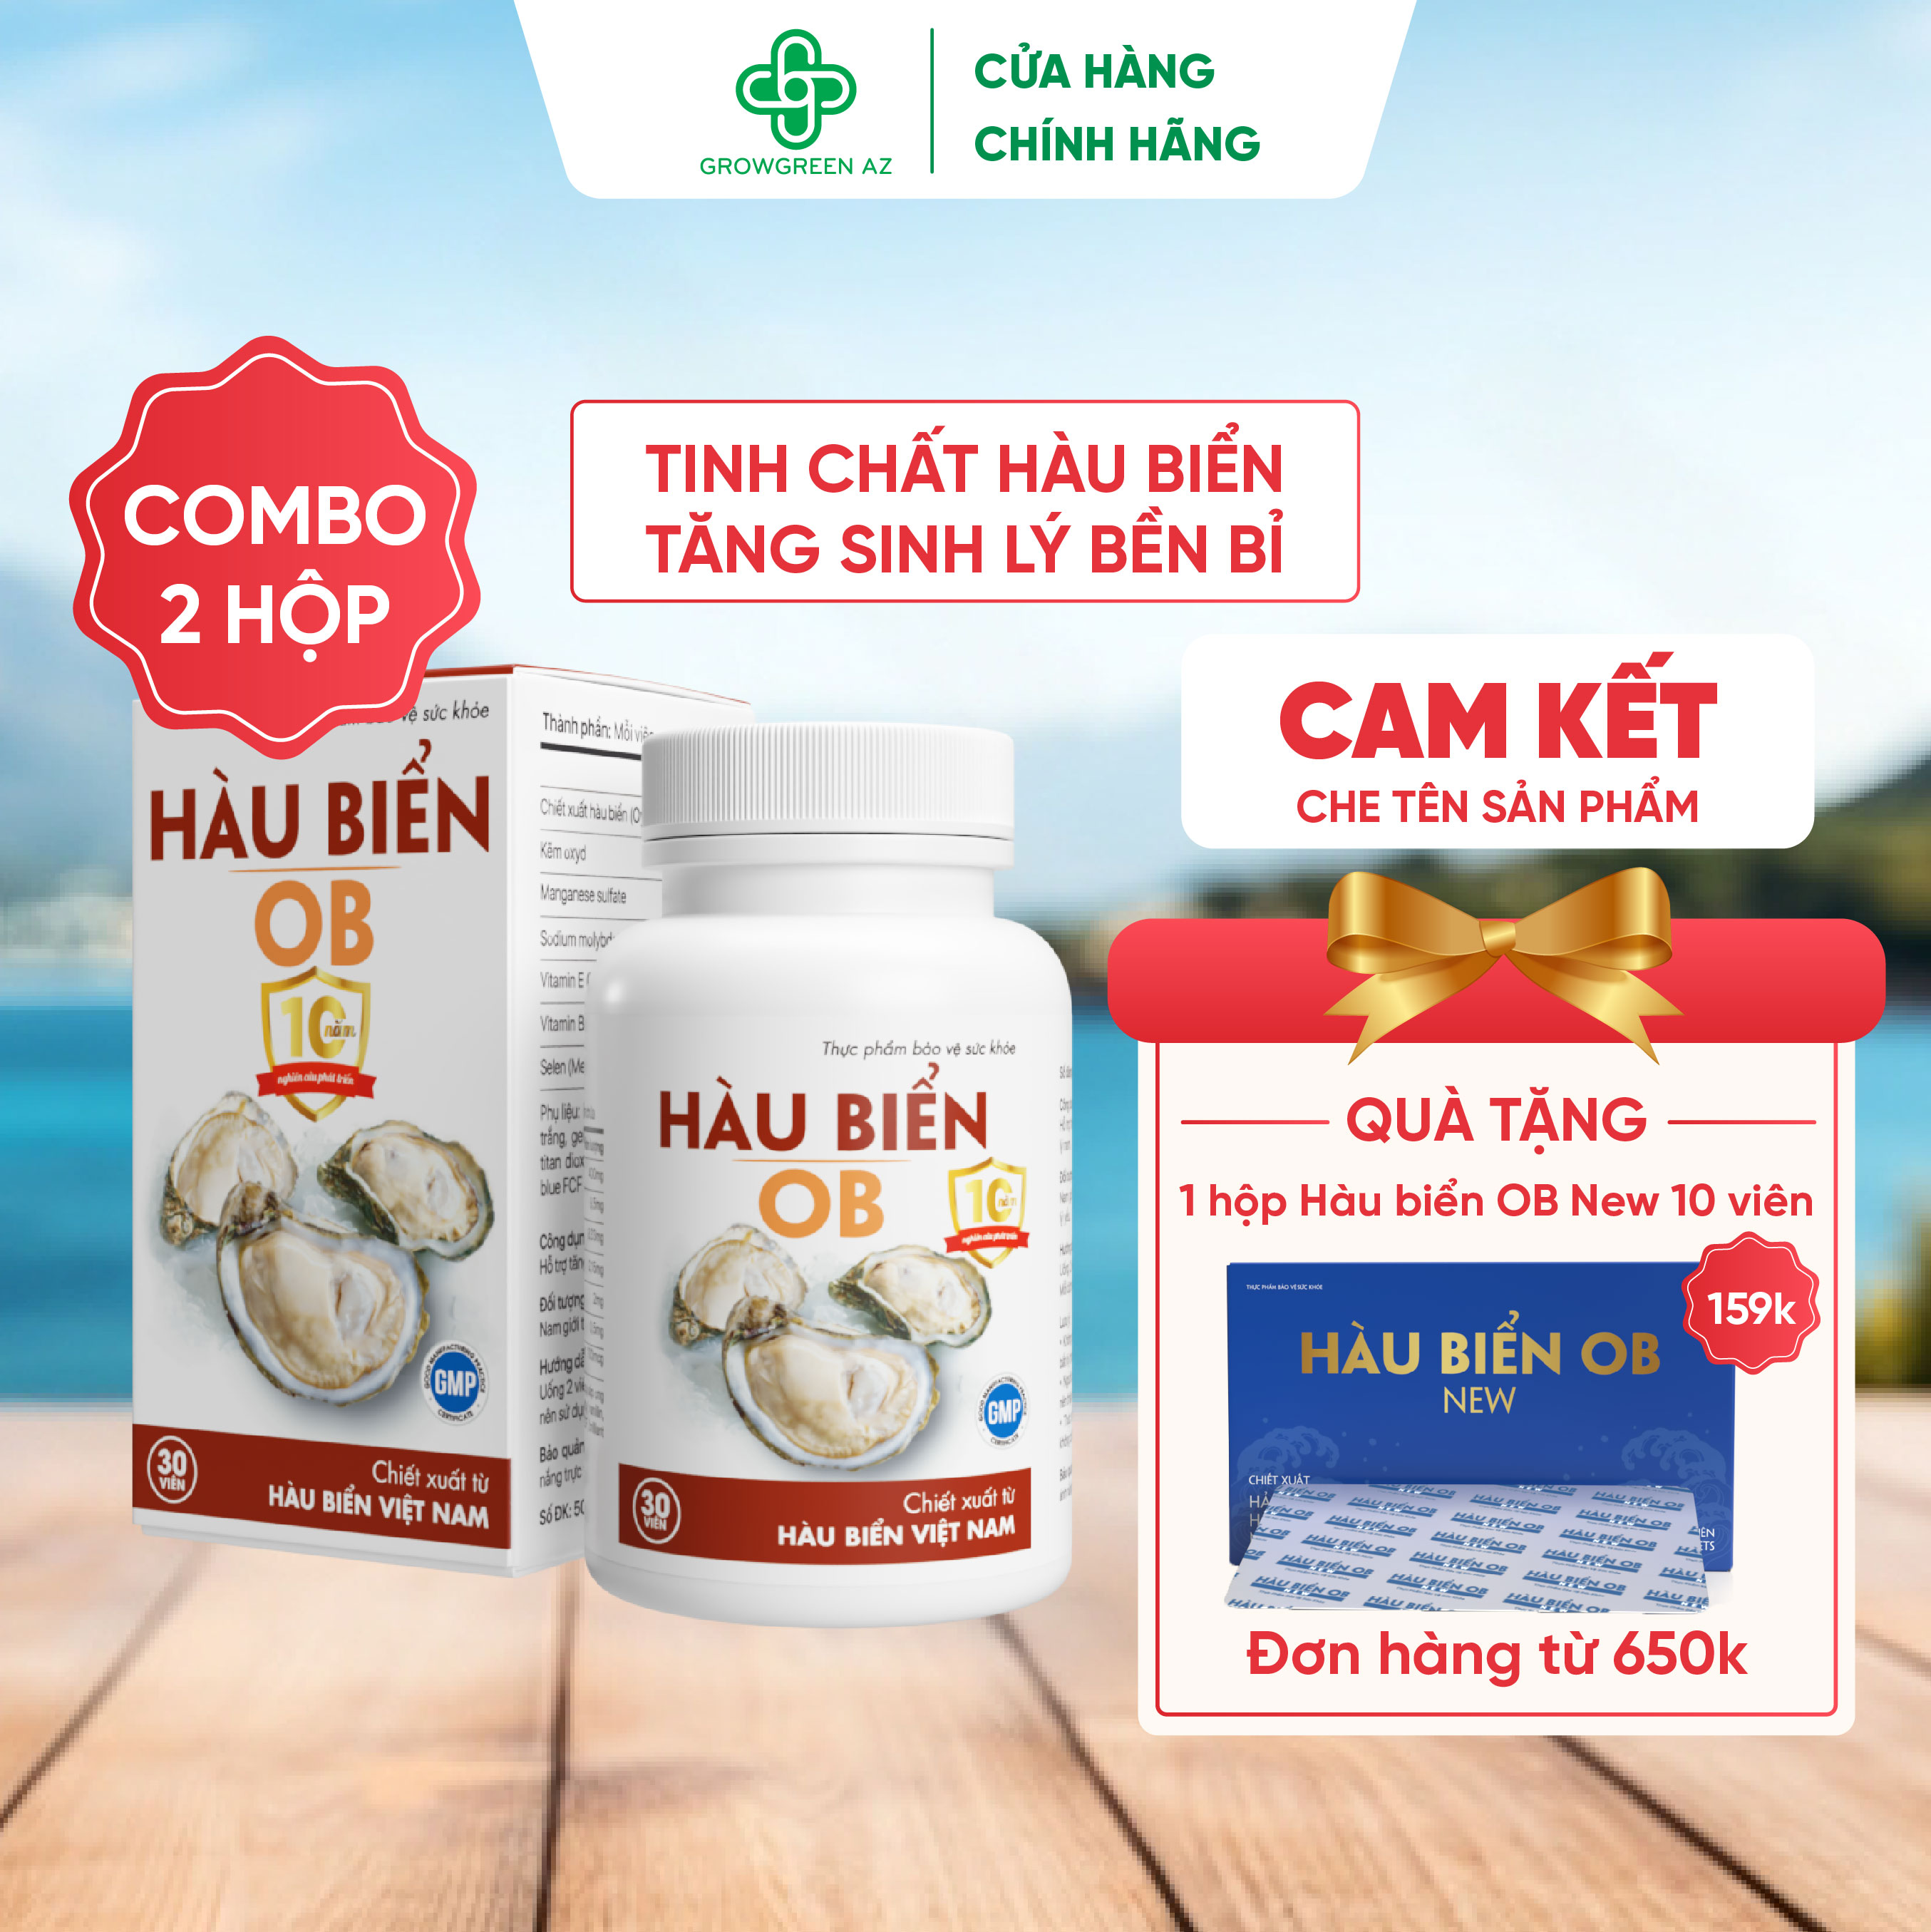 COMBO 2 HỘP Thực phẩm bảo vệ sức khỏe Hàu Biển OB - tăng cường sinh lý, trị xuất tinh sớm, Tăng sinh chất lượng tinh trùng (Hộp 30 viên)